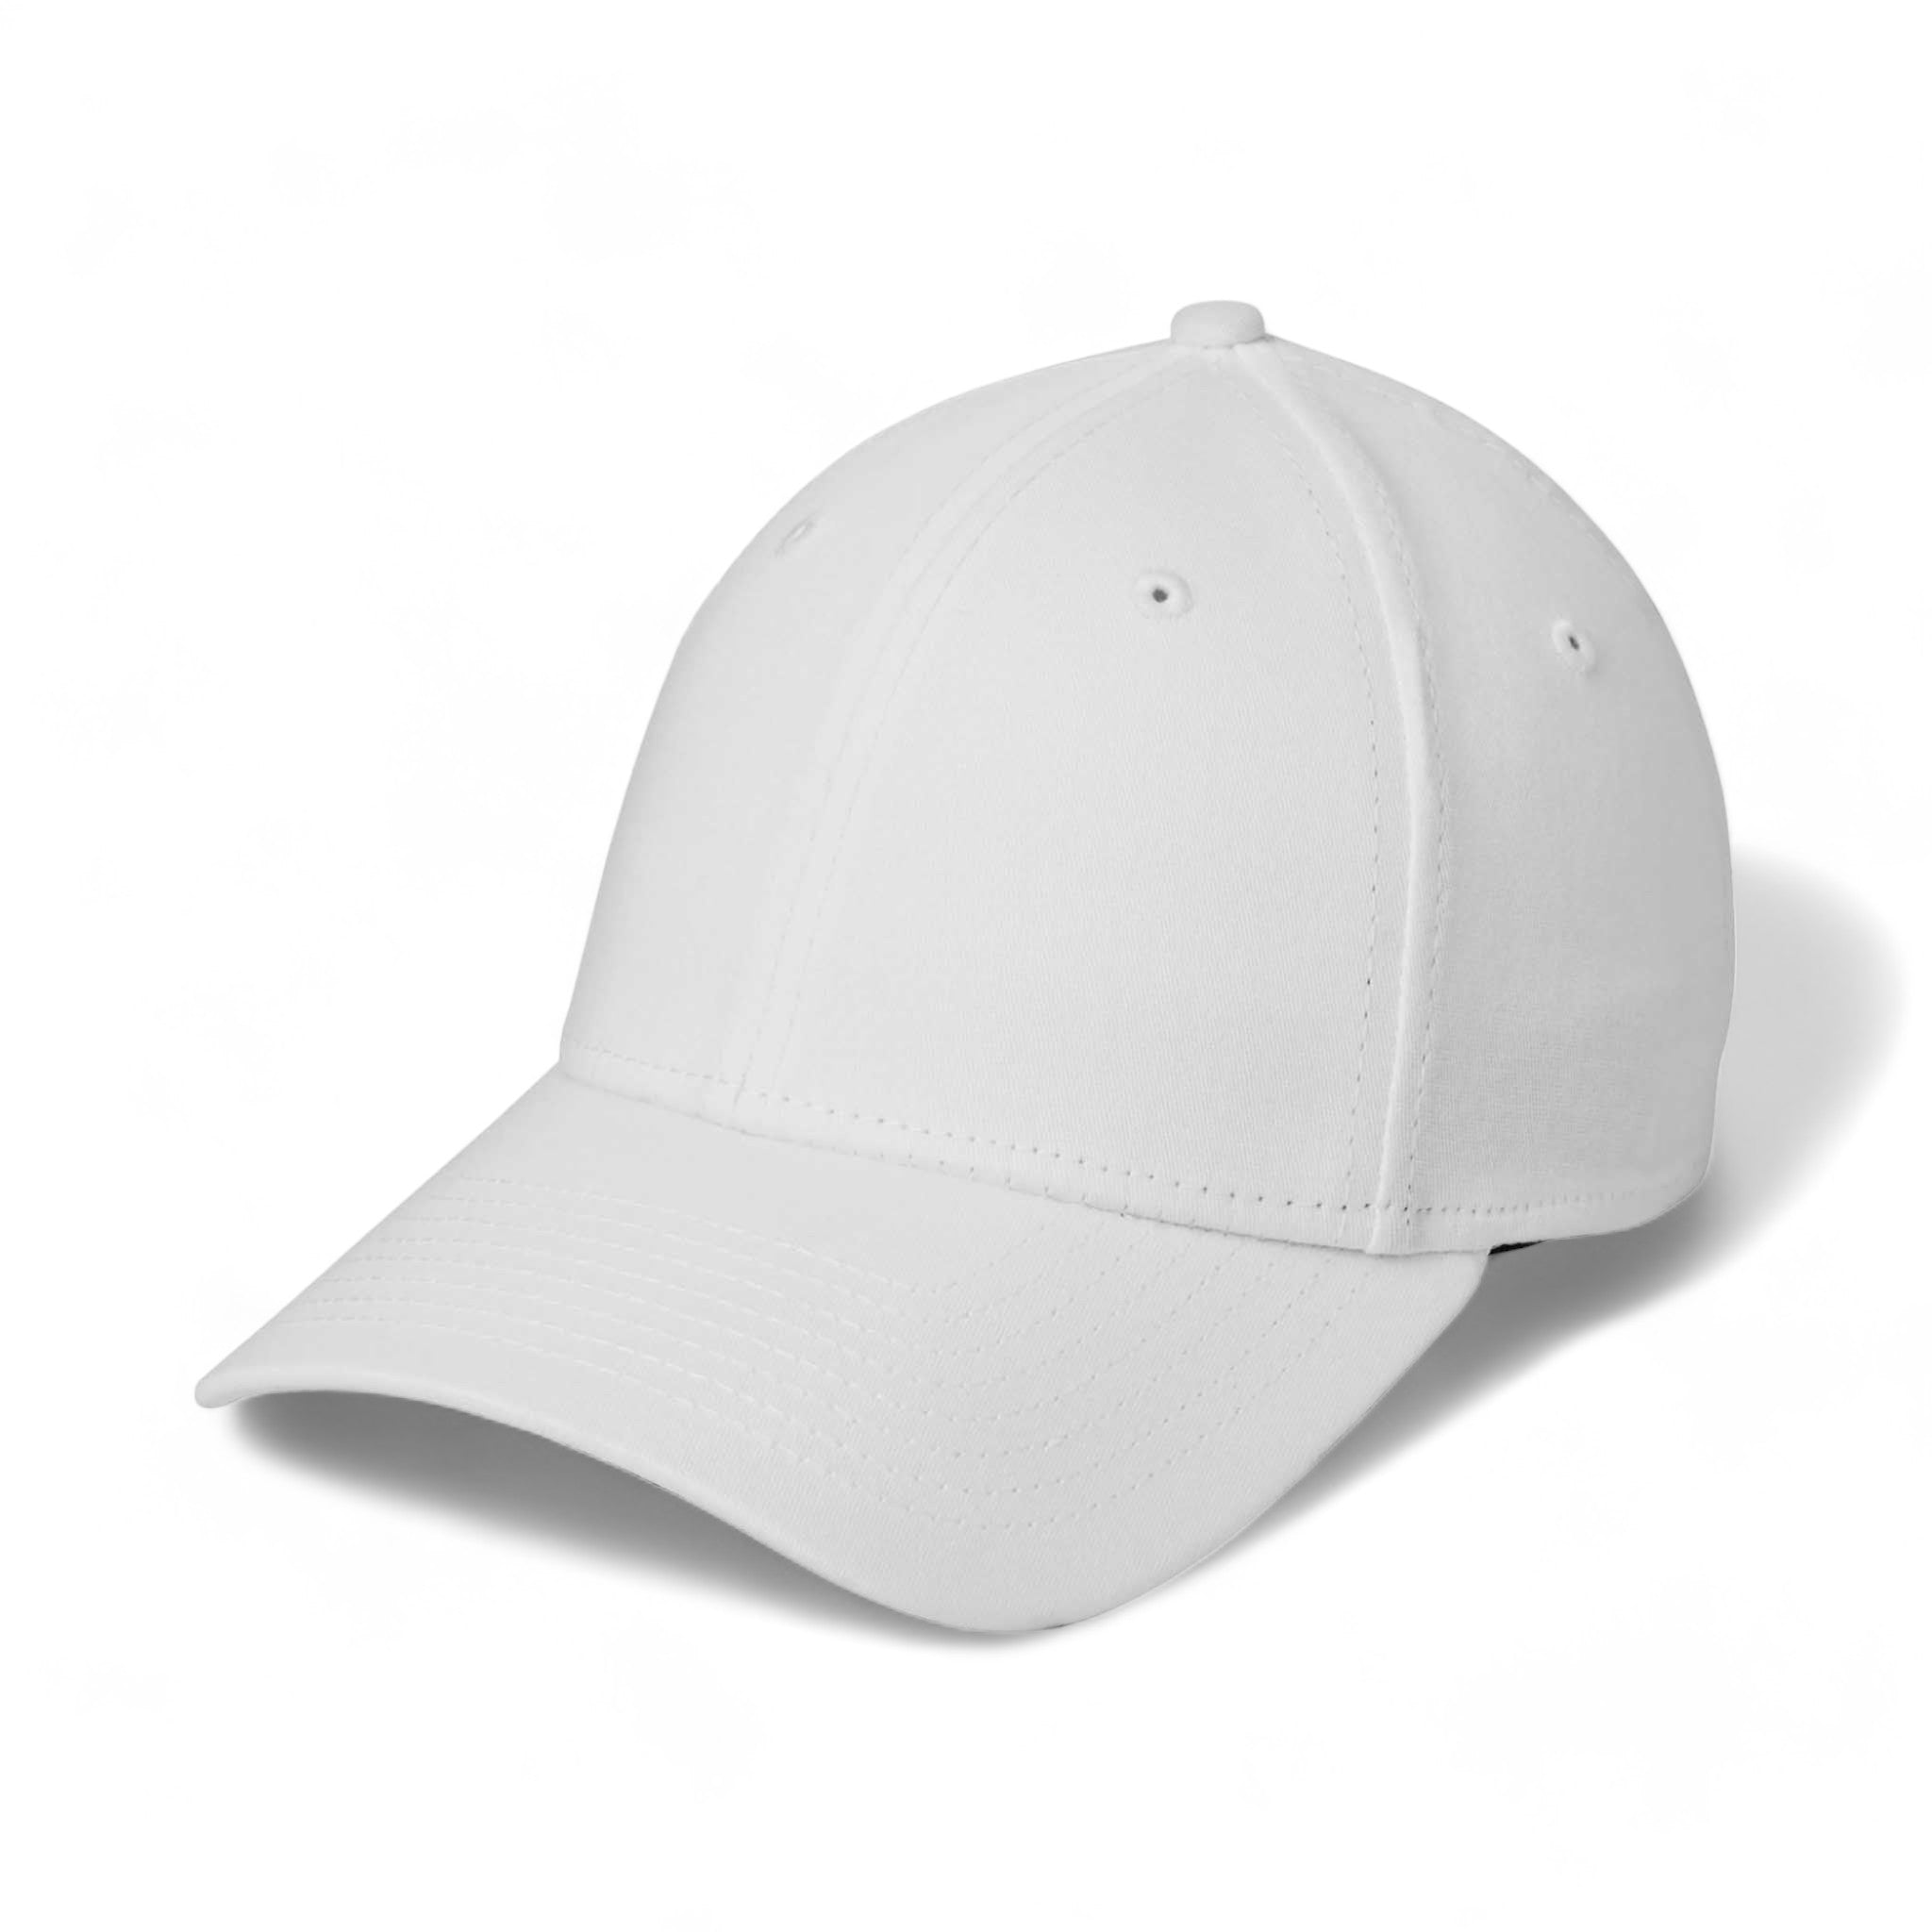 Side view of New Era NE1000 custom hat in white